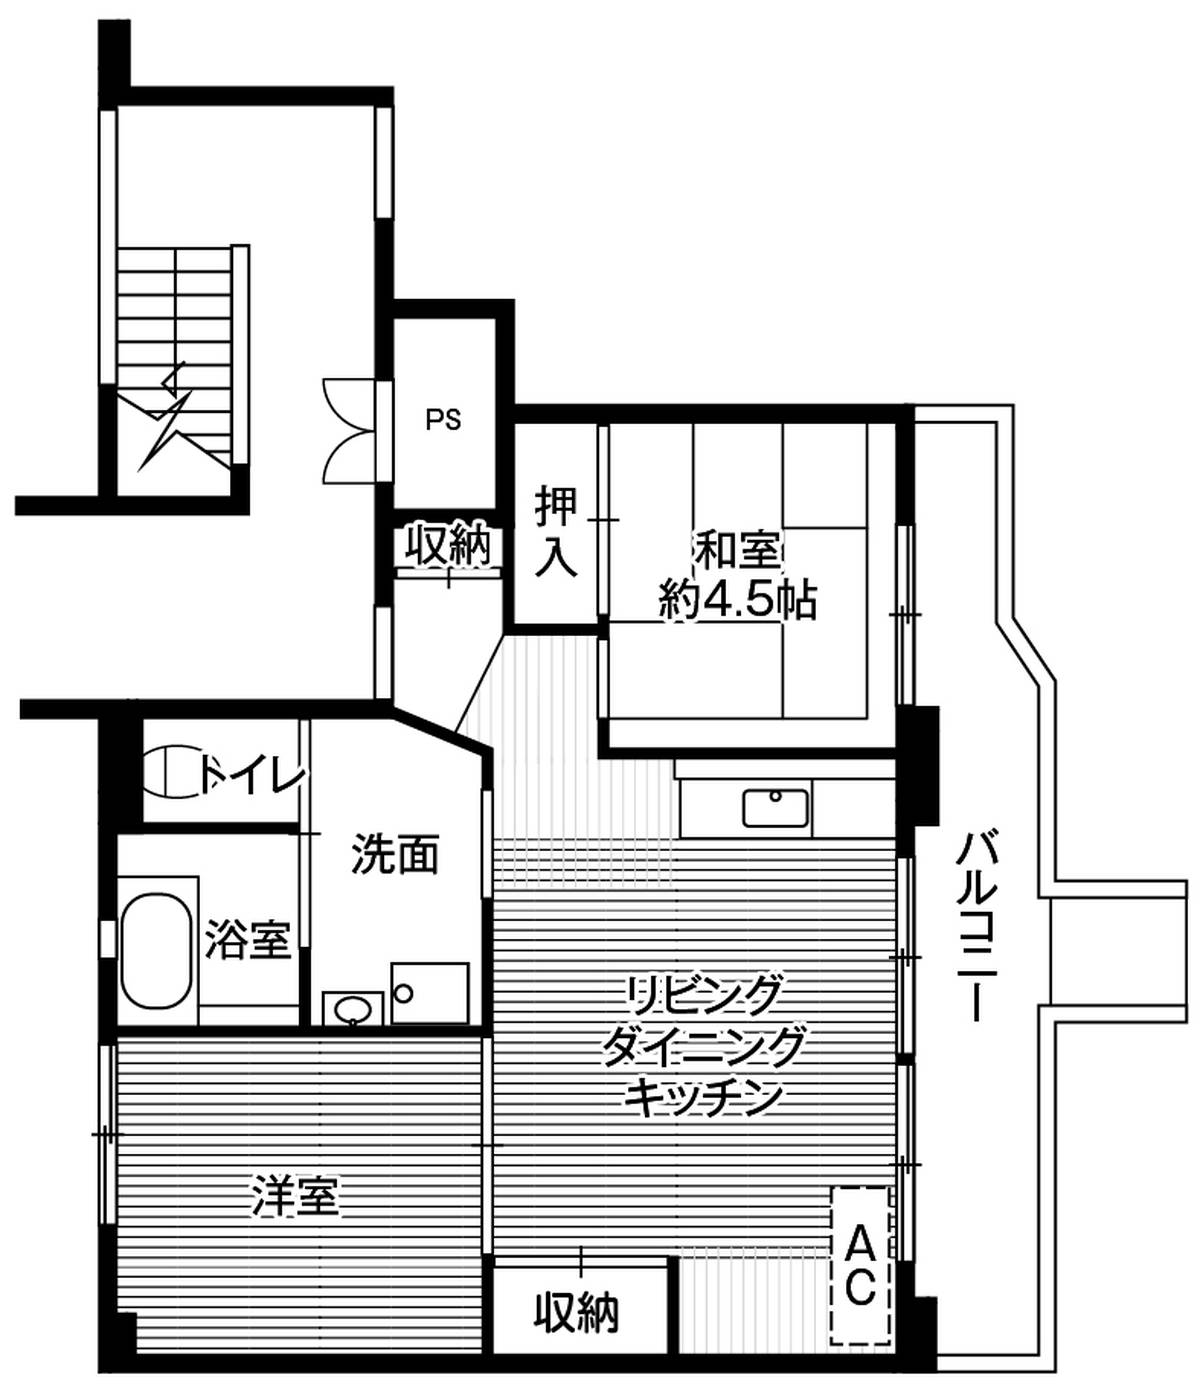 Sơ đồ phòng 2LDK của Village House Yanagida Dai 2 ở Himi-shi